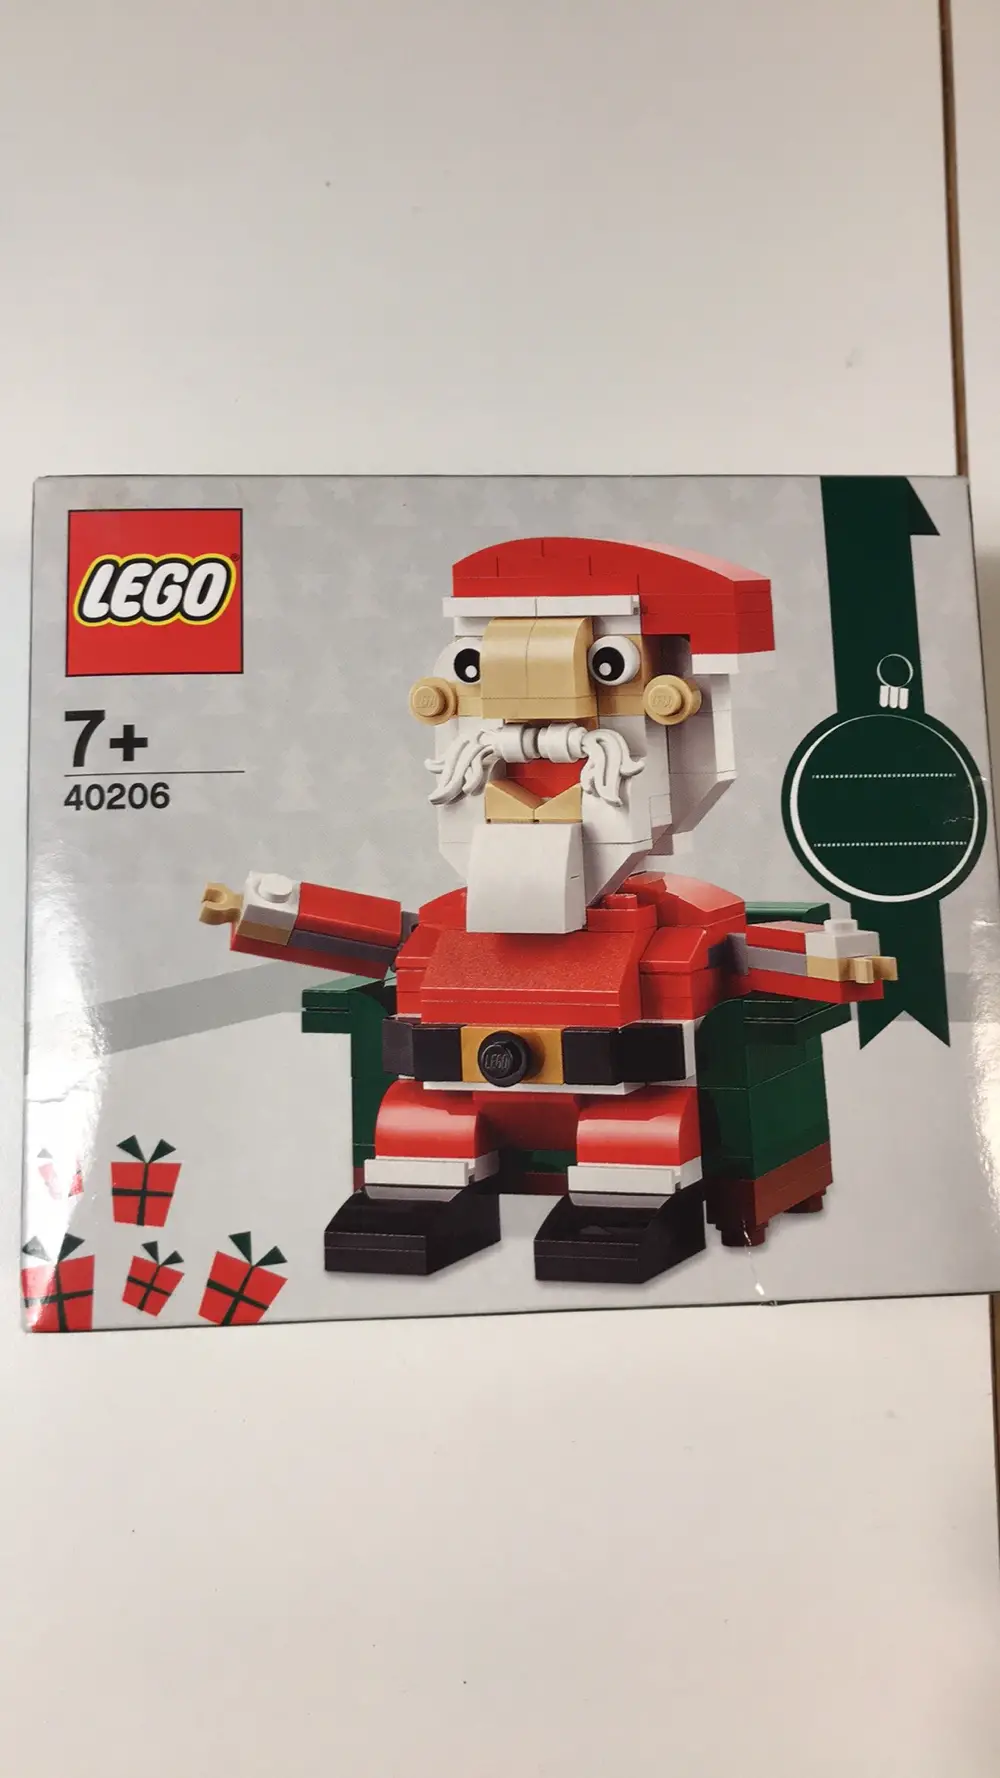 Køb Lego Julemand 40206 af Nanna på Reshopper Shop børn, mor bolig